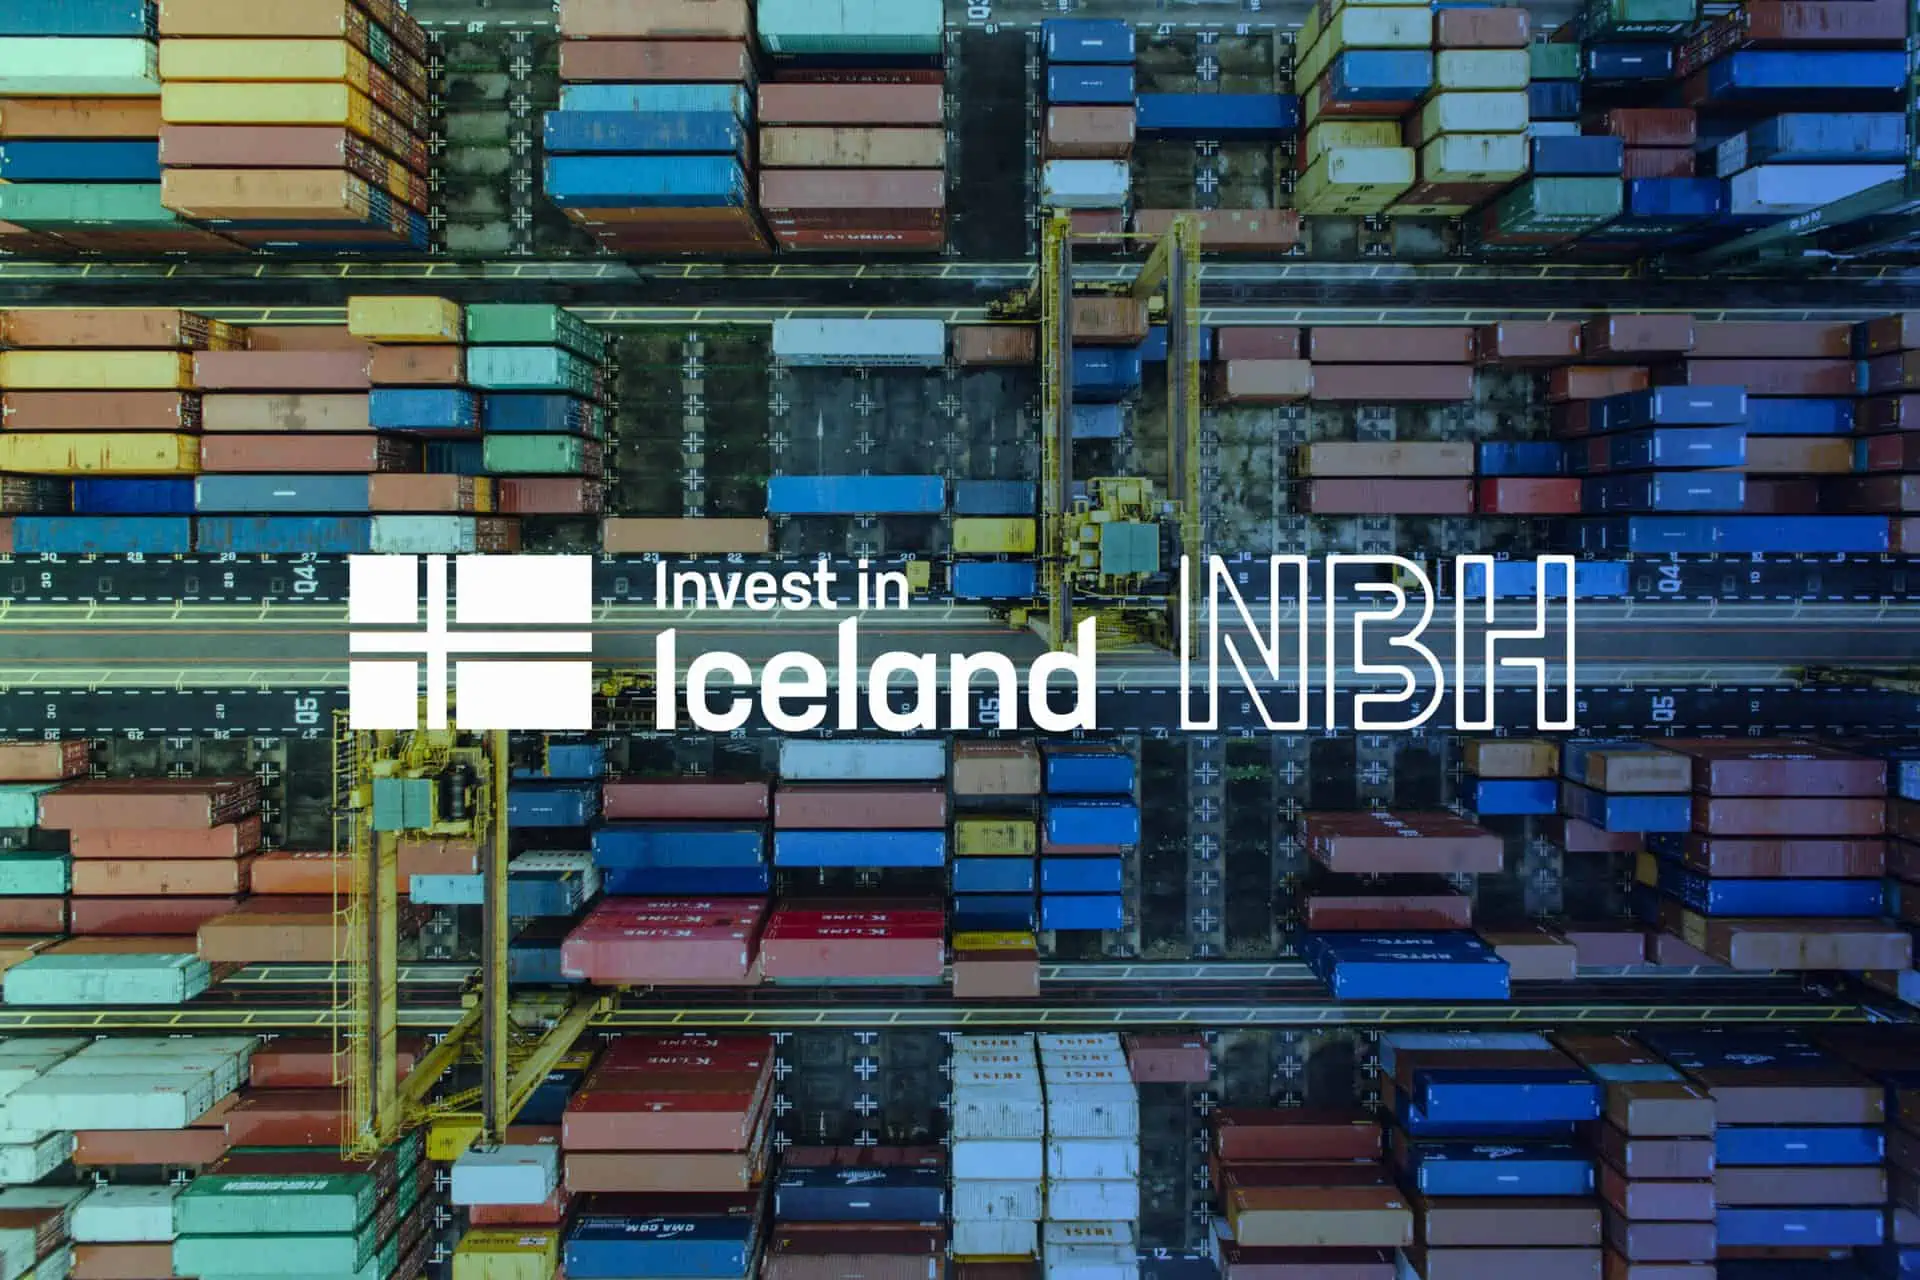 Promote Iceland laajentaa yhteistyötään NBH:n kanssa Invest in Iceland -tapahtumassa.